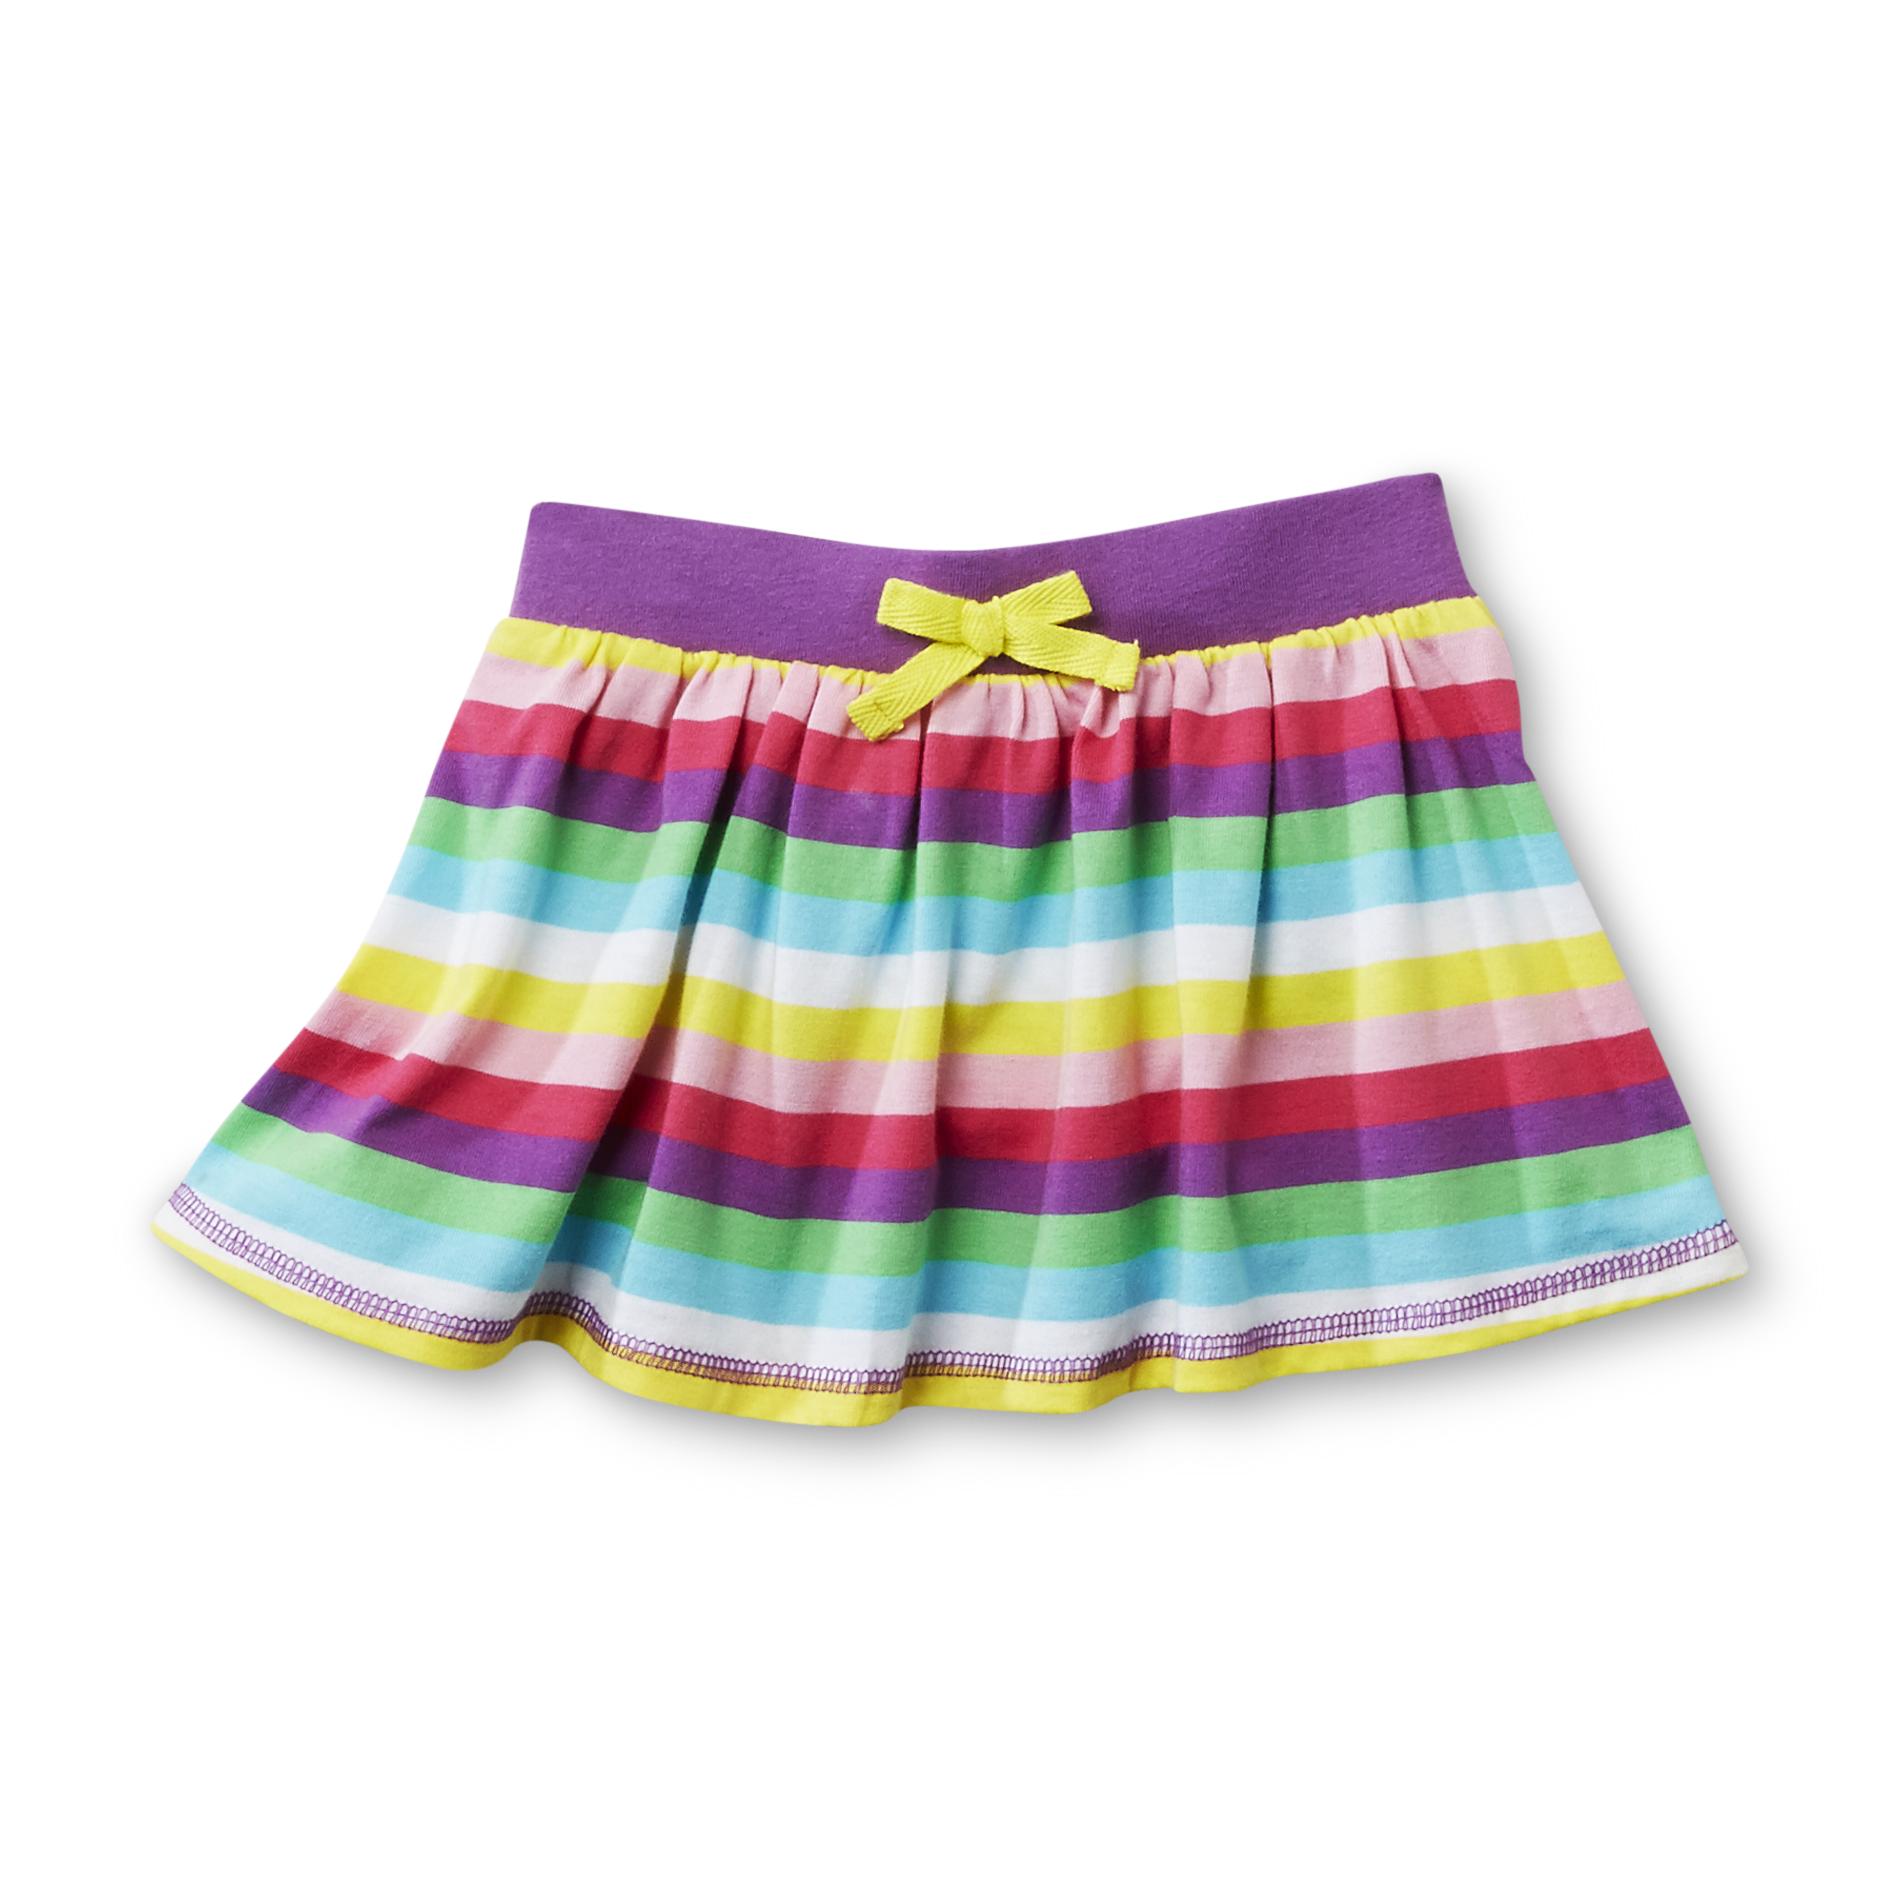 WonderKids Infant & Toddler Girl's Skirt - Striped